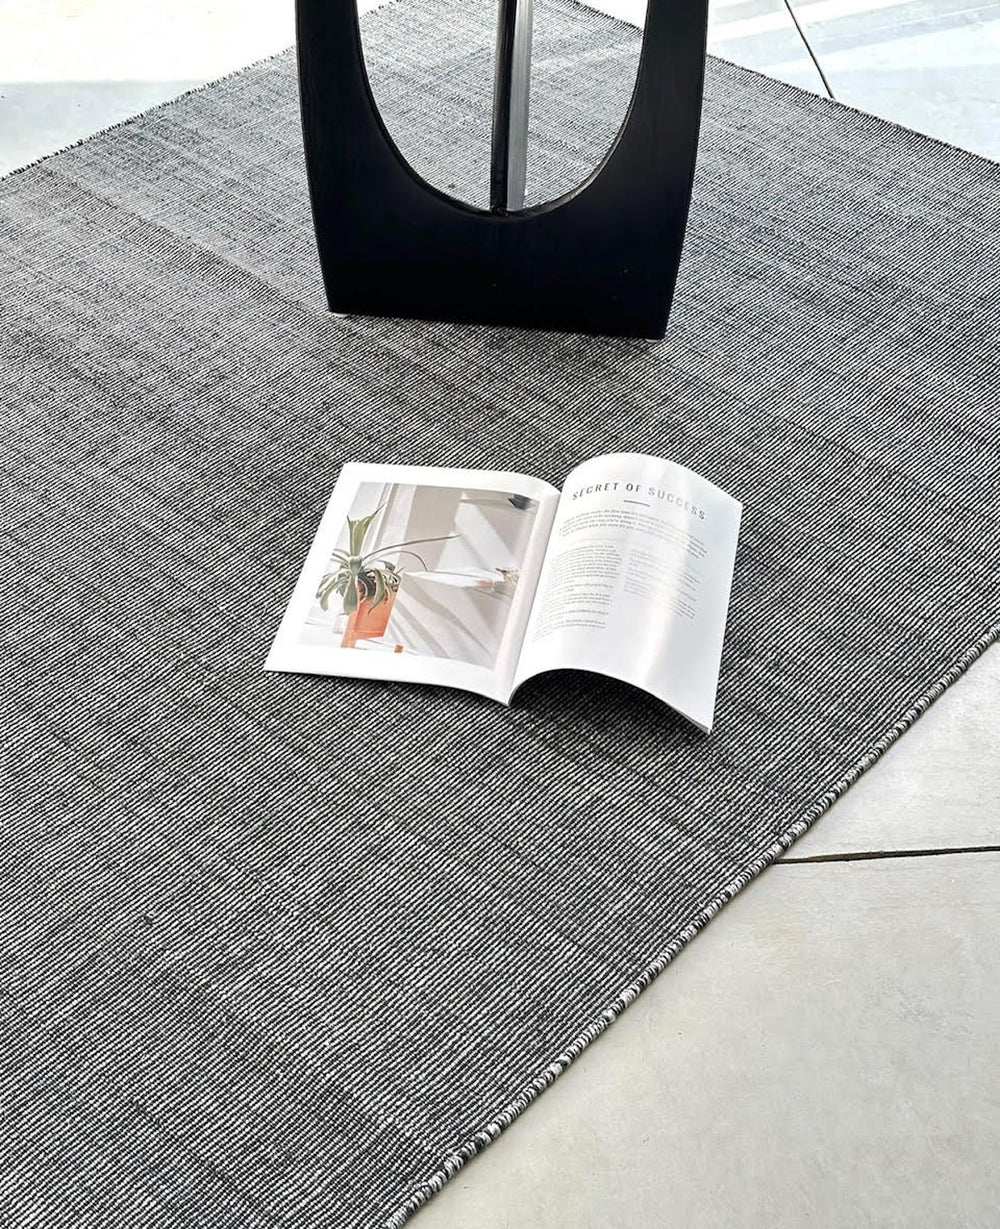 שטיח שחור ארני 120*180 ס